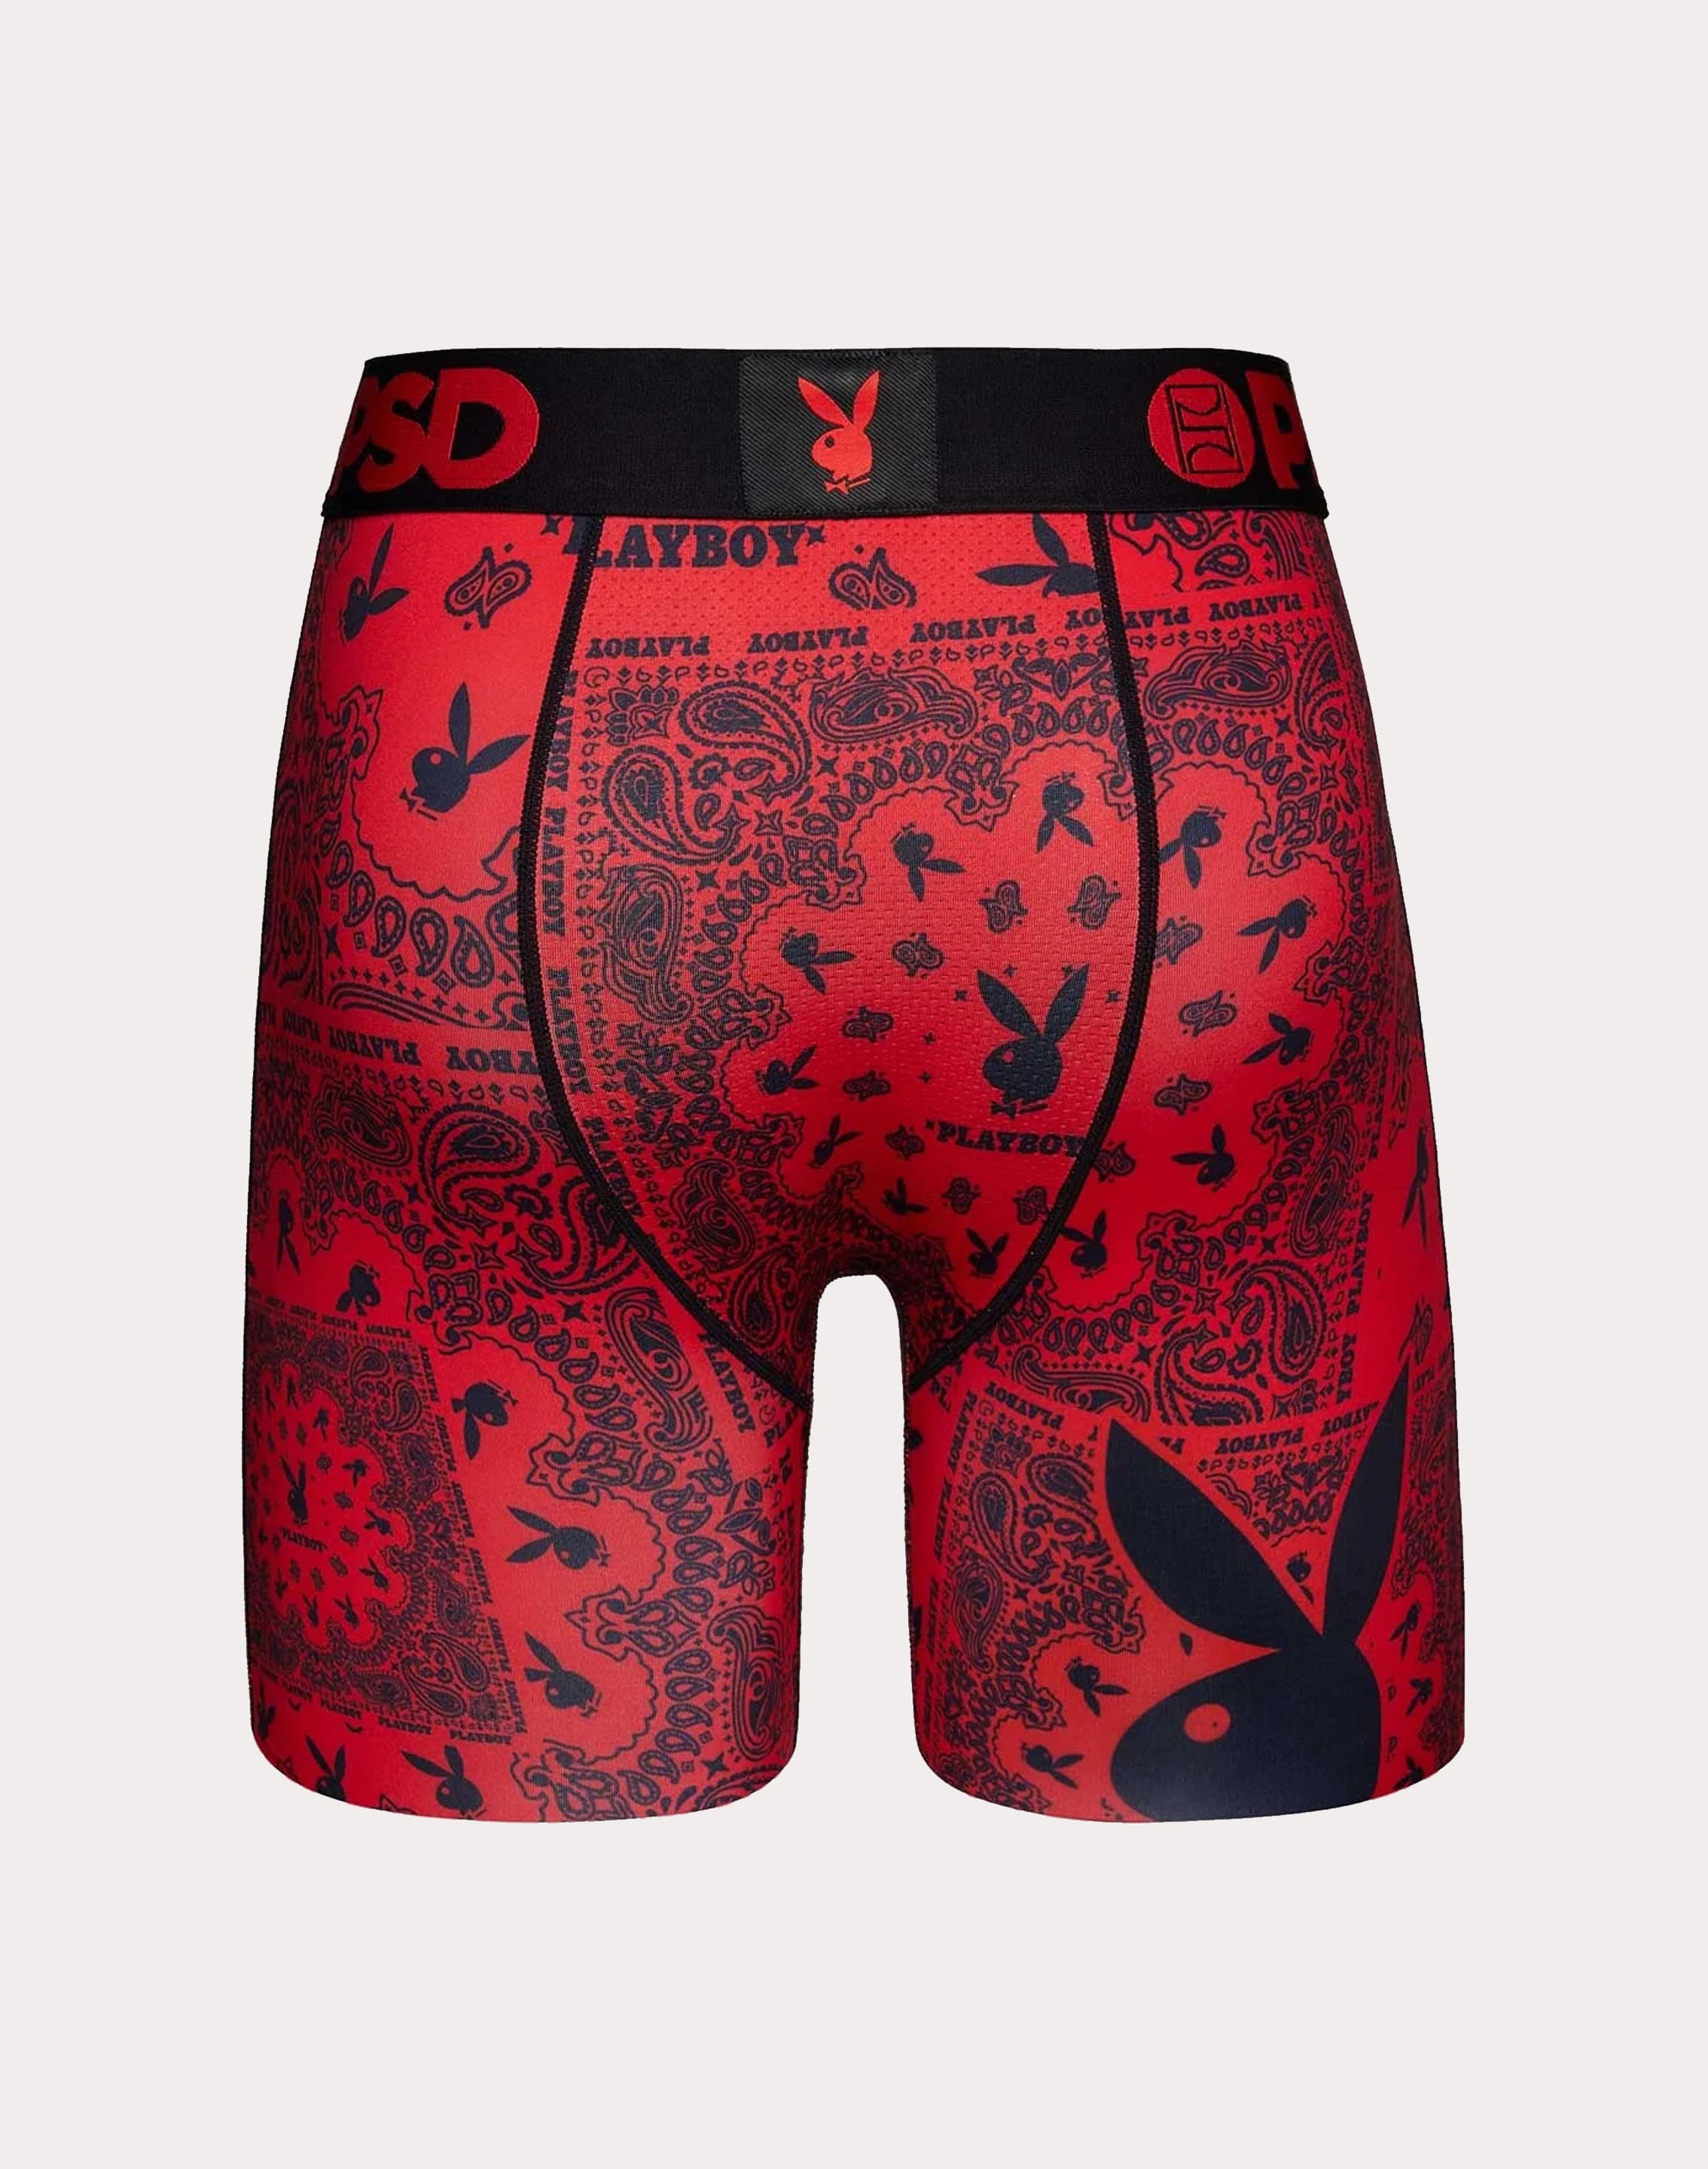 Playboy red underwear men's boxer briefs zodiac year of the dragon wedding  couple newlywed underwear women's red briefs